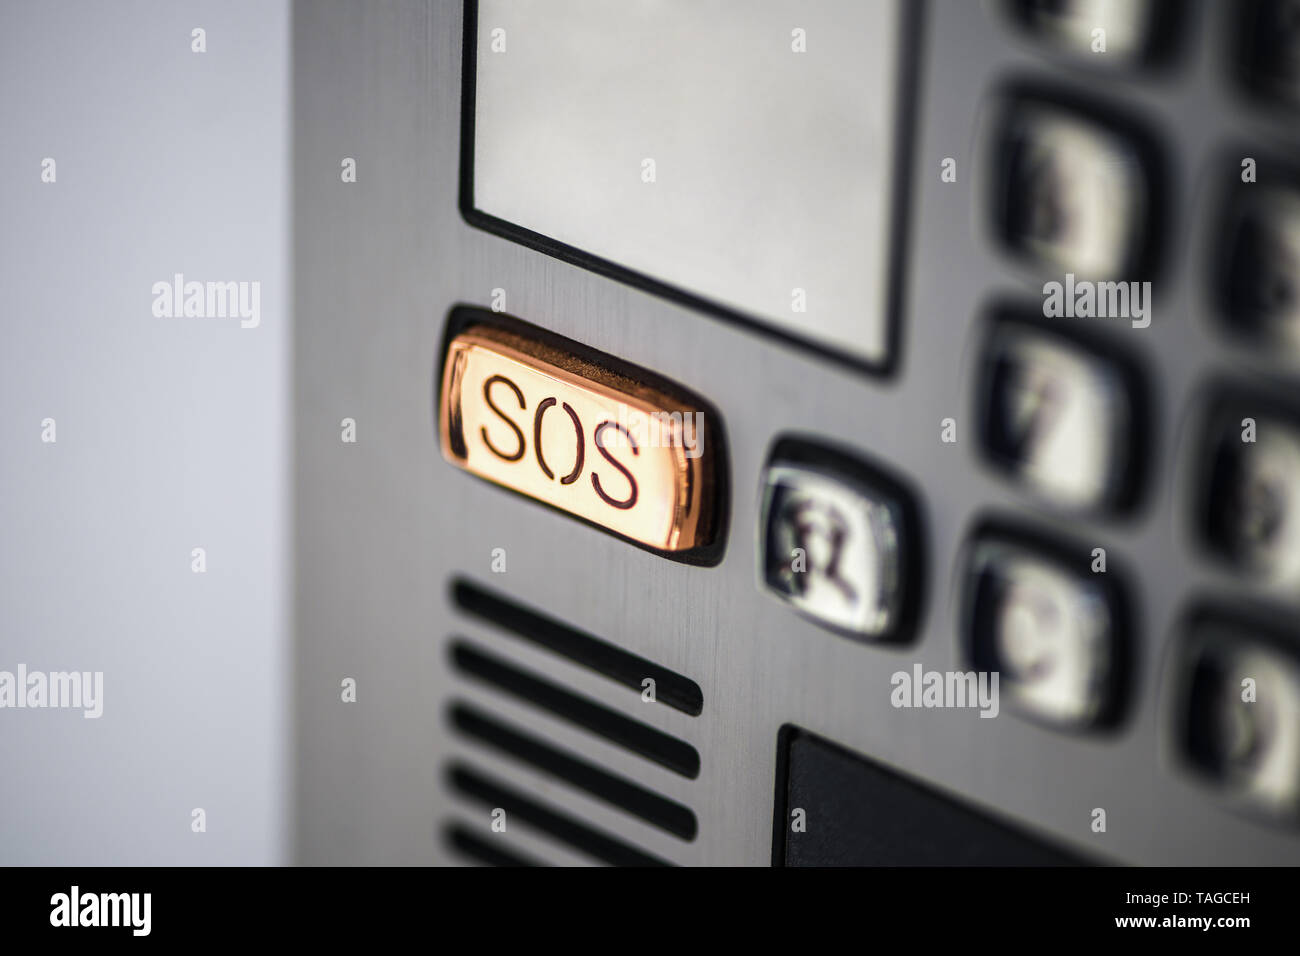 SOS bouton. Le bouton SOS sur le panneau de l'appareil, interphone. Bouton d'appel à l'aide de l'écran de l'appareil en métal couleur gris. Banque D'Images